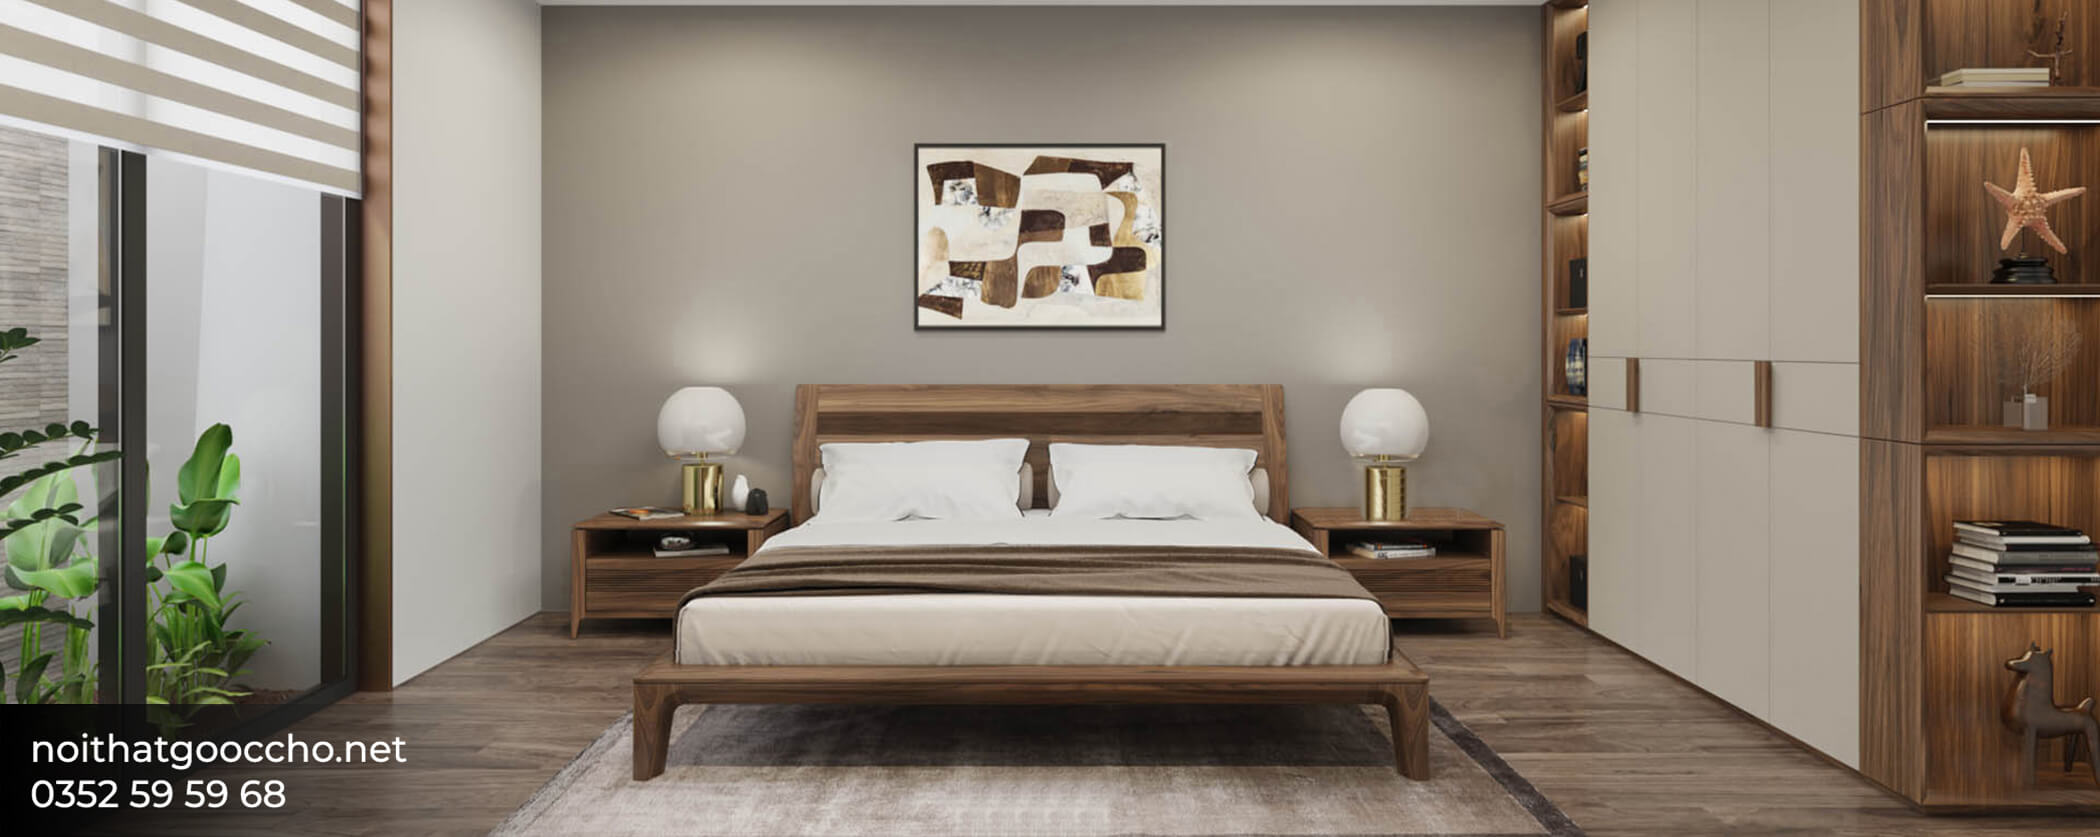 mẫu tap đầu giường gỗ óc chó có kích thước đa dạng